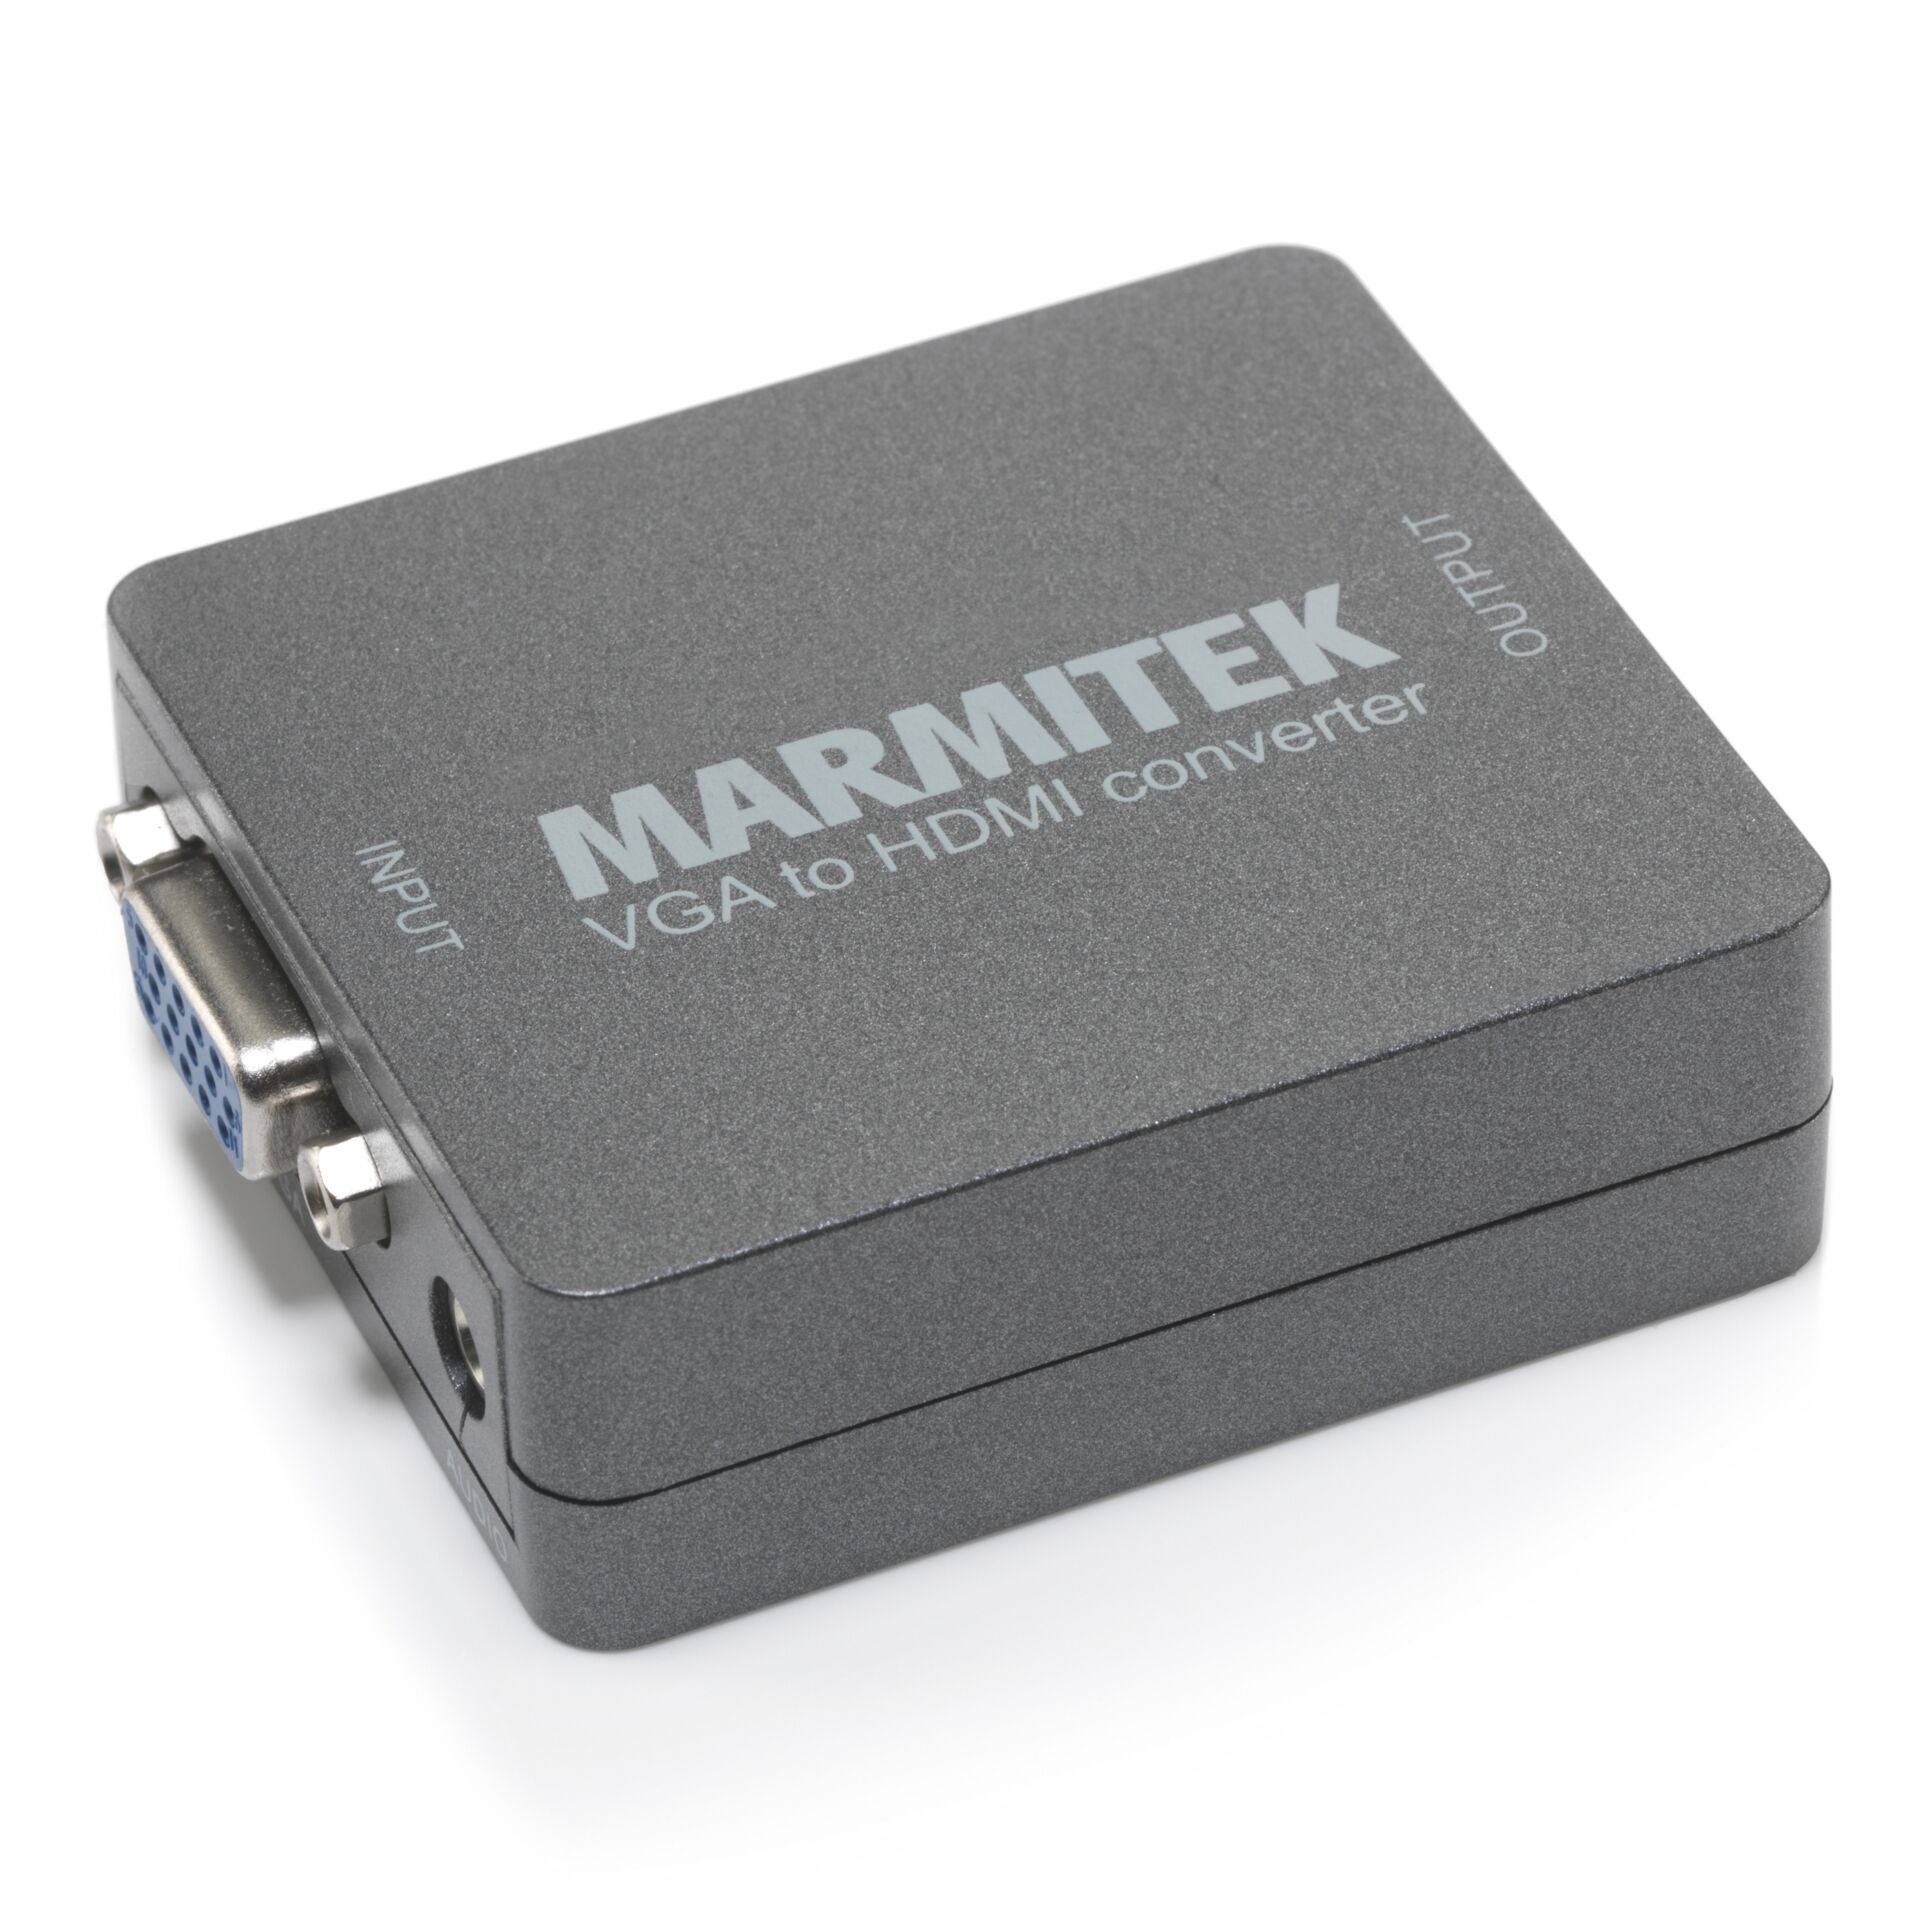 Marmitek Connect VH51 HDMI convert. VGA a HDMI